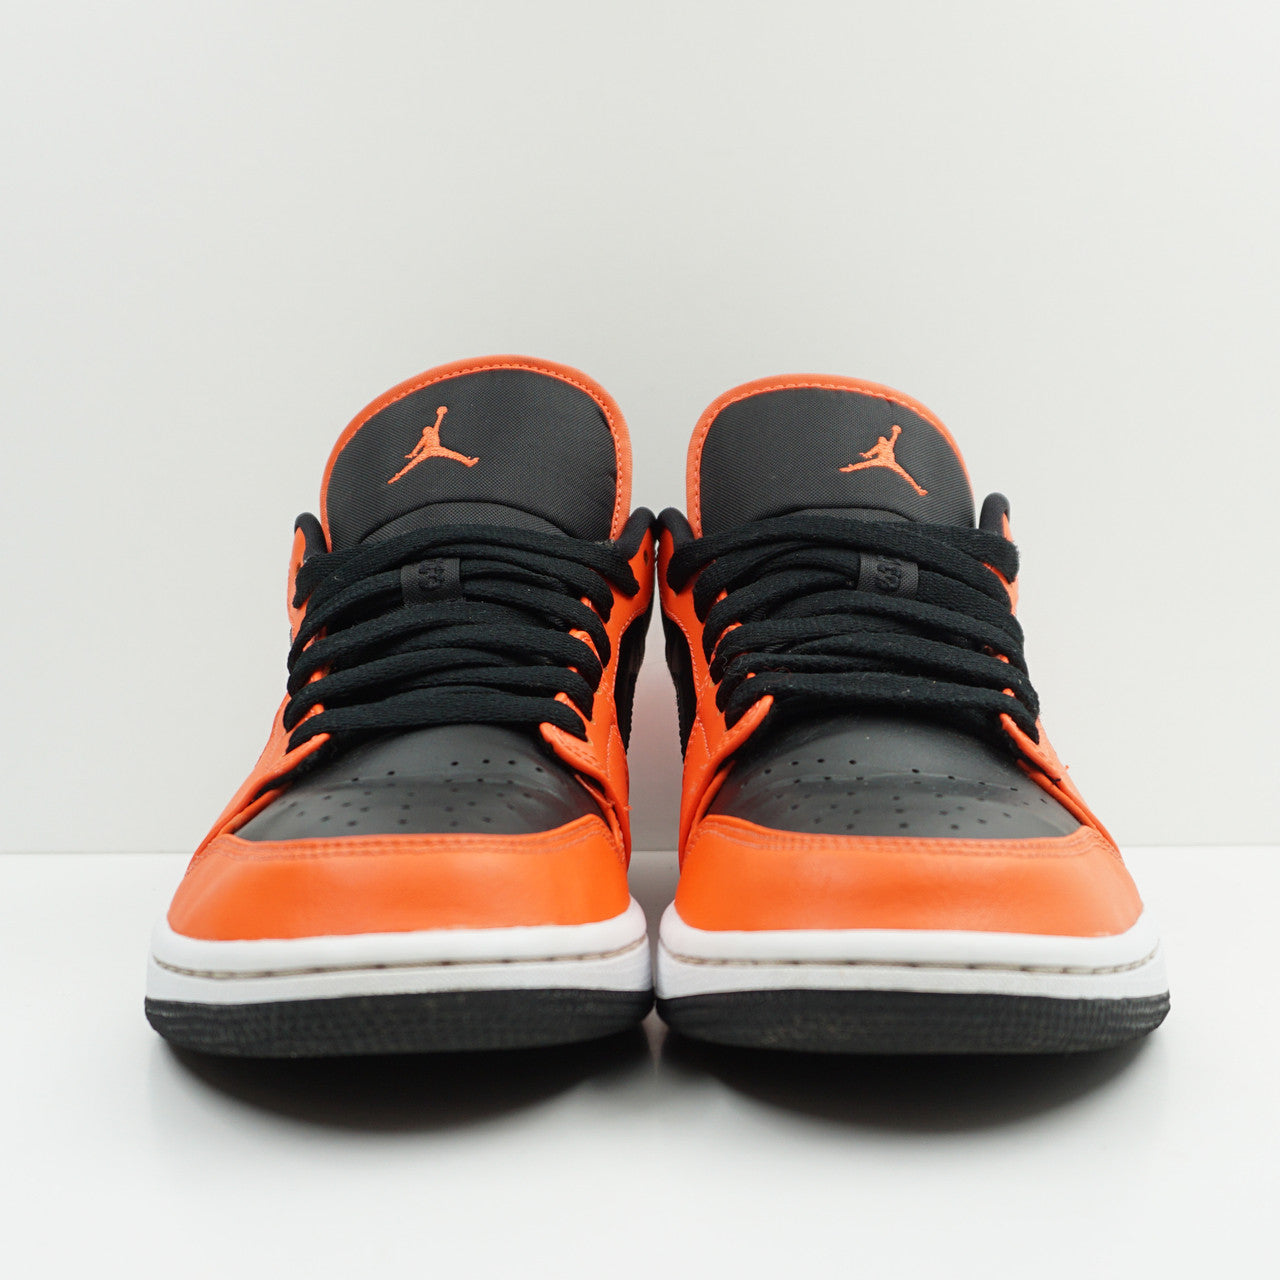 Jordan 1 Low SE Black Turf Orange